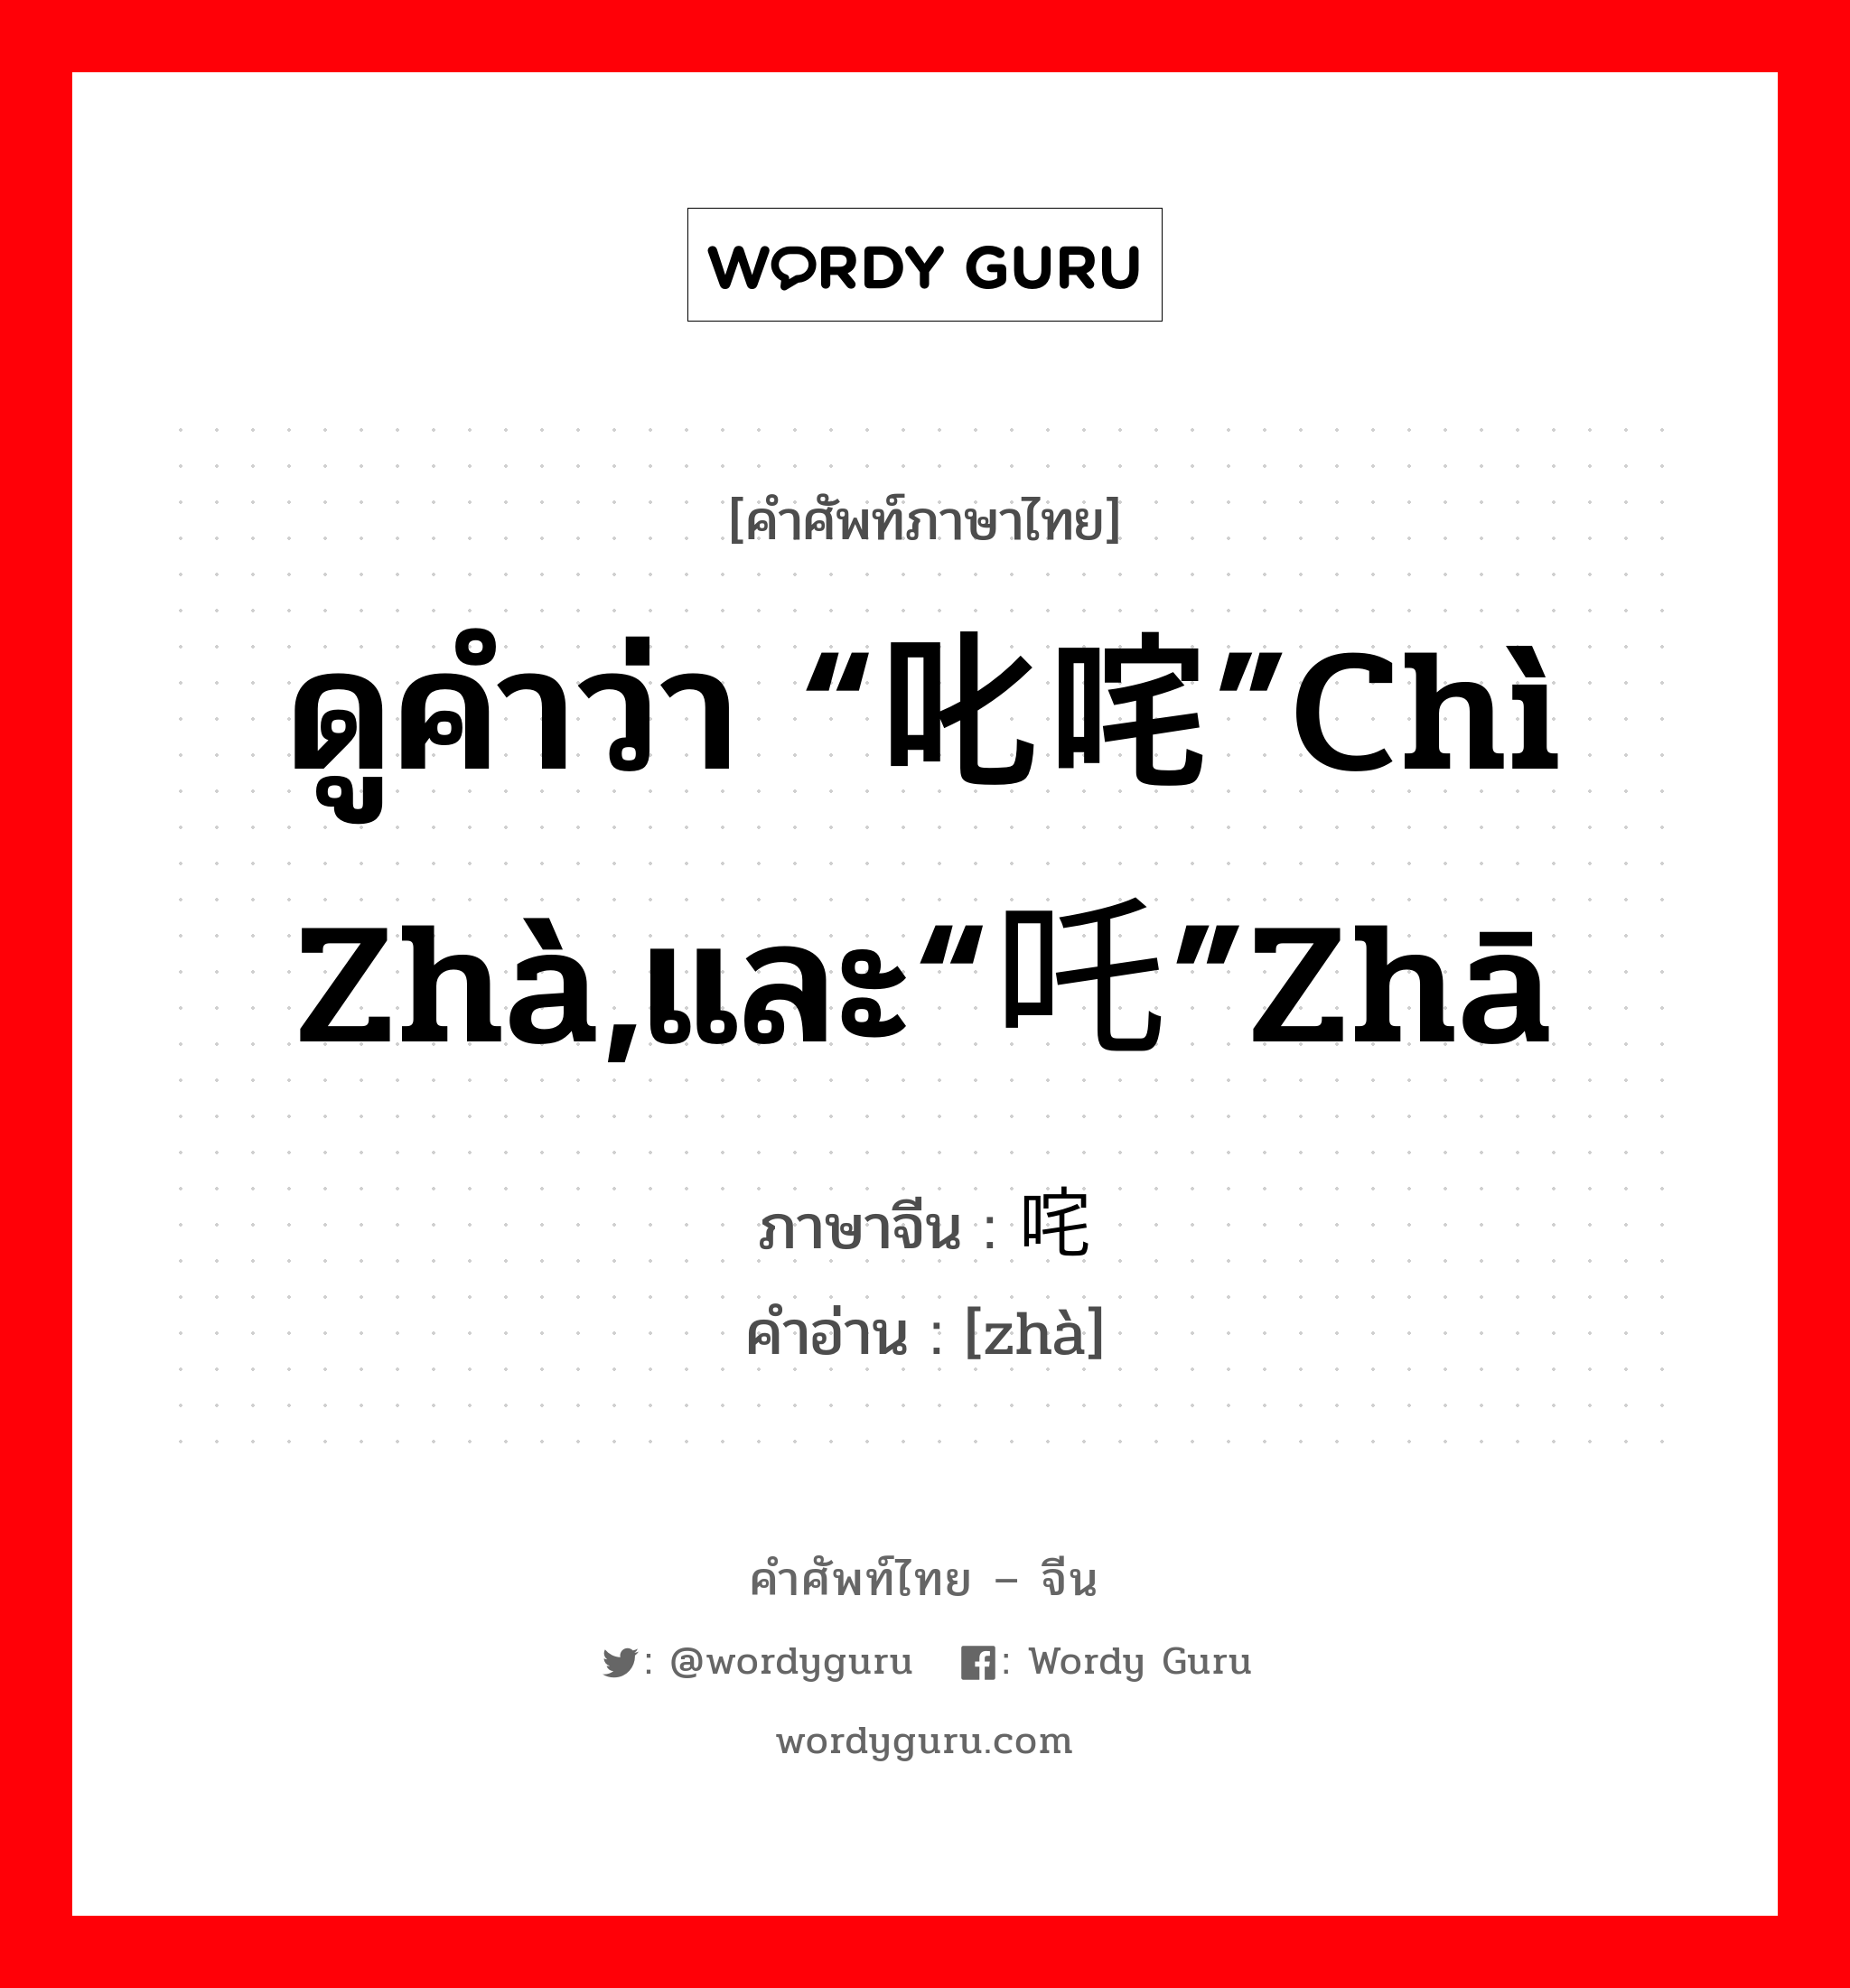 ดูคำว่า “叱咤”chì zhà,และ“吒”zhā ภาษาจีนคืออะไร, คำศัพท์ภาษาไทย - จีน ดูคำว่า “叱咤”chì zhà,และ“吒”zhā ภาษาจีน 咤 คำอ่าน [zhà]